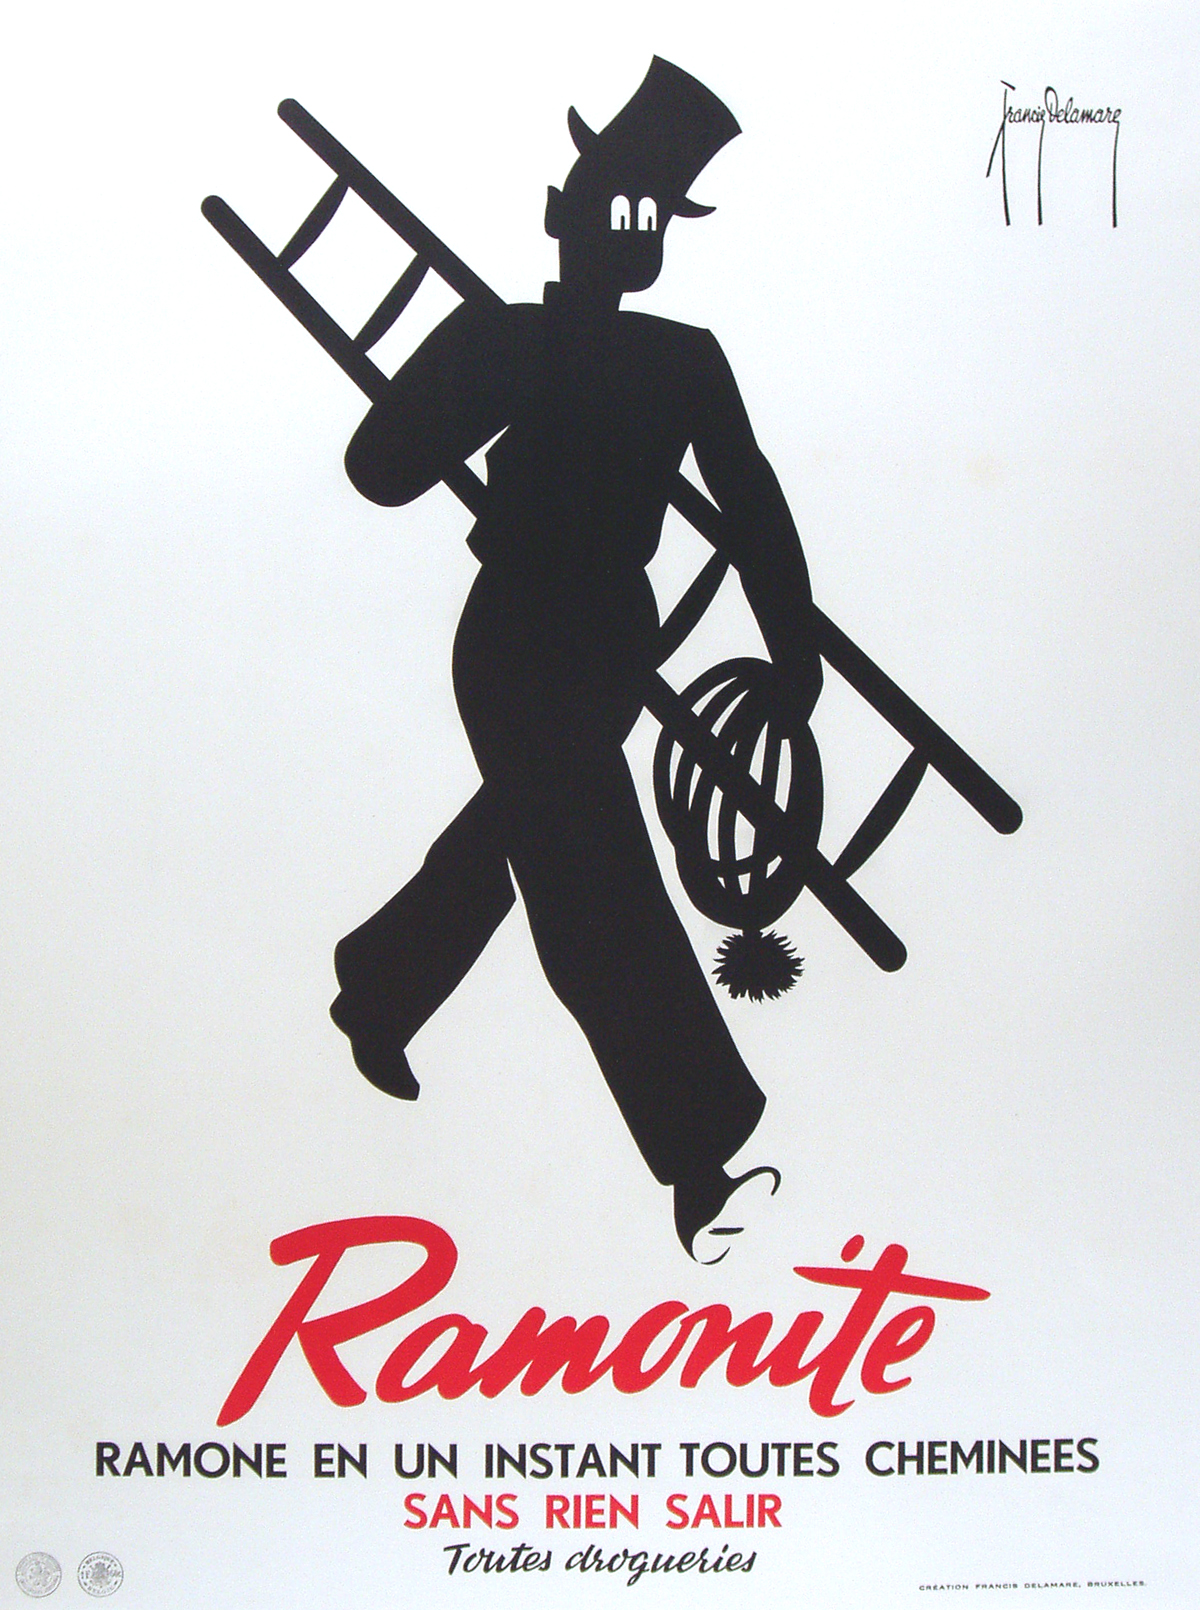 Ramonite